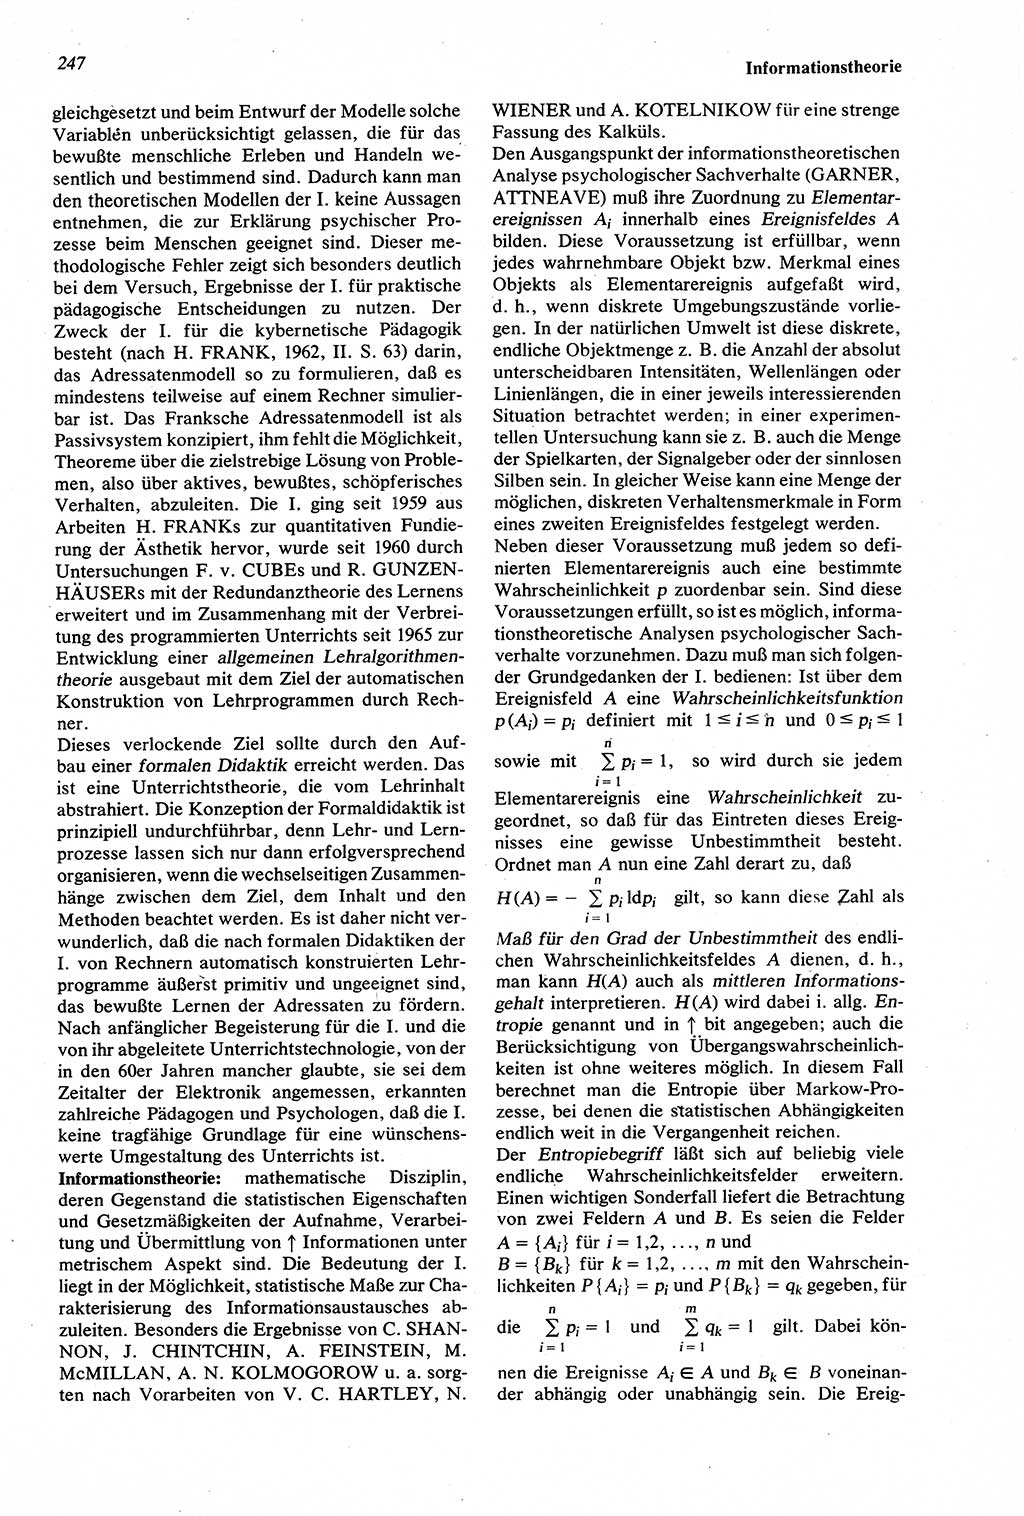 Wörterbuch der Psychologie [Deutsche Demokratische Republik (DDR)] 1976, Seite 247 (Wb. Psych. DDR 1976, S. 247)